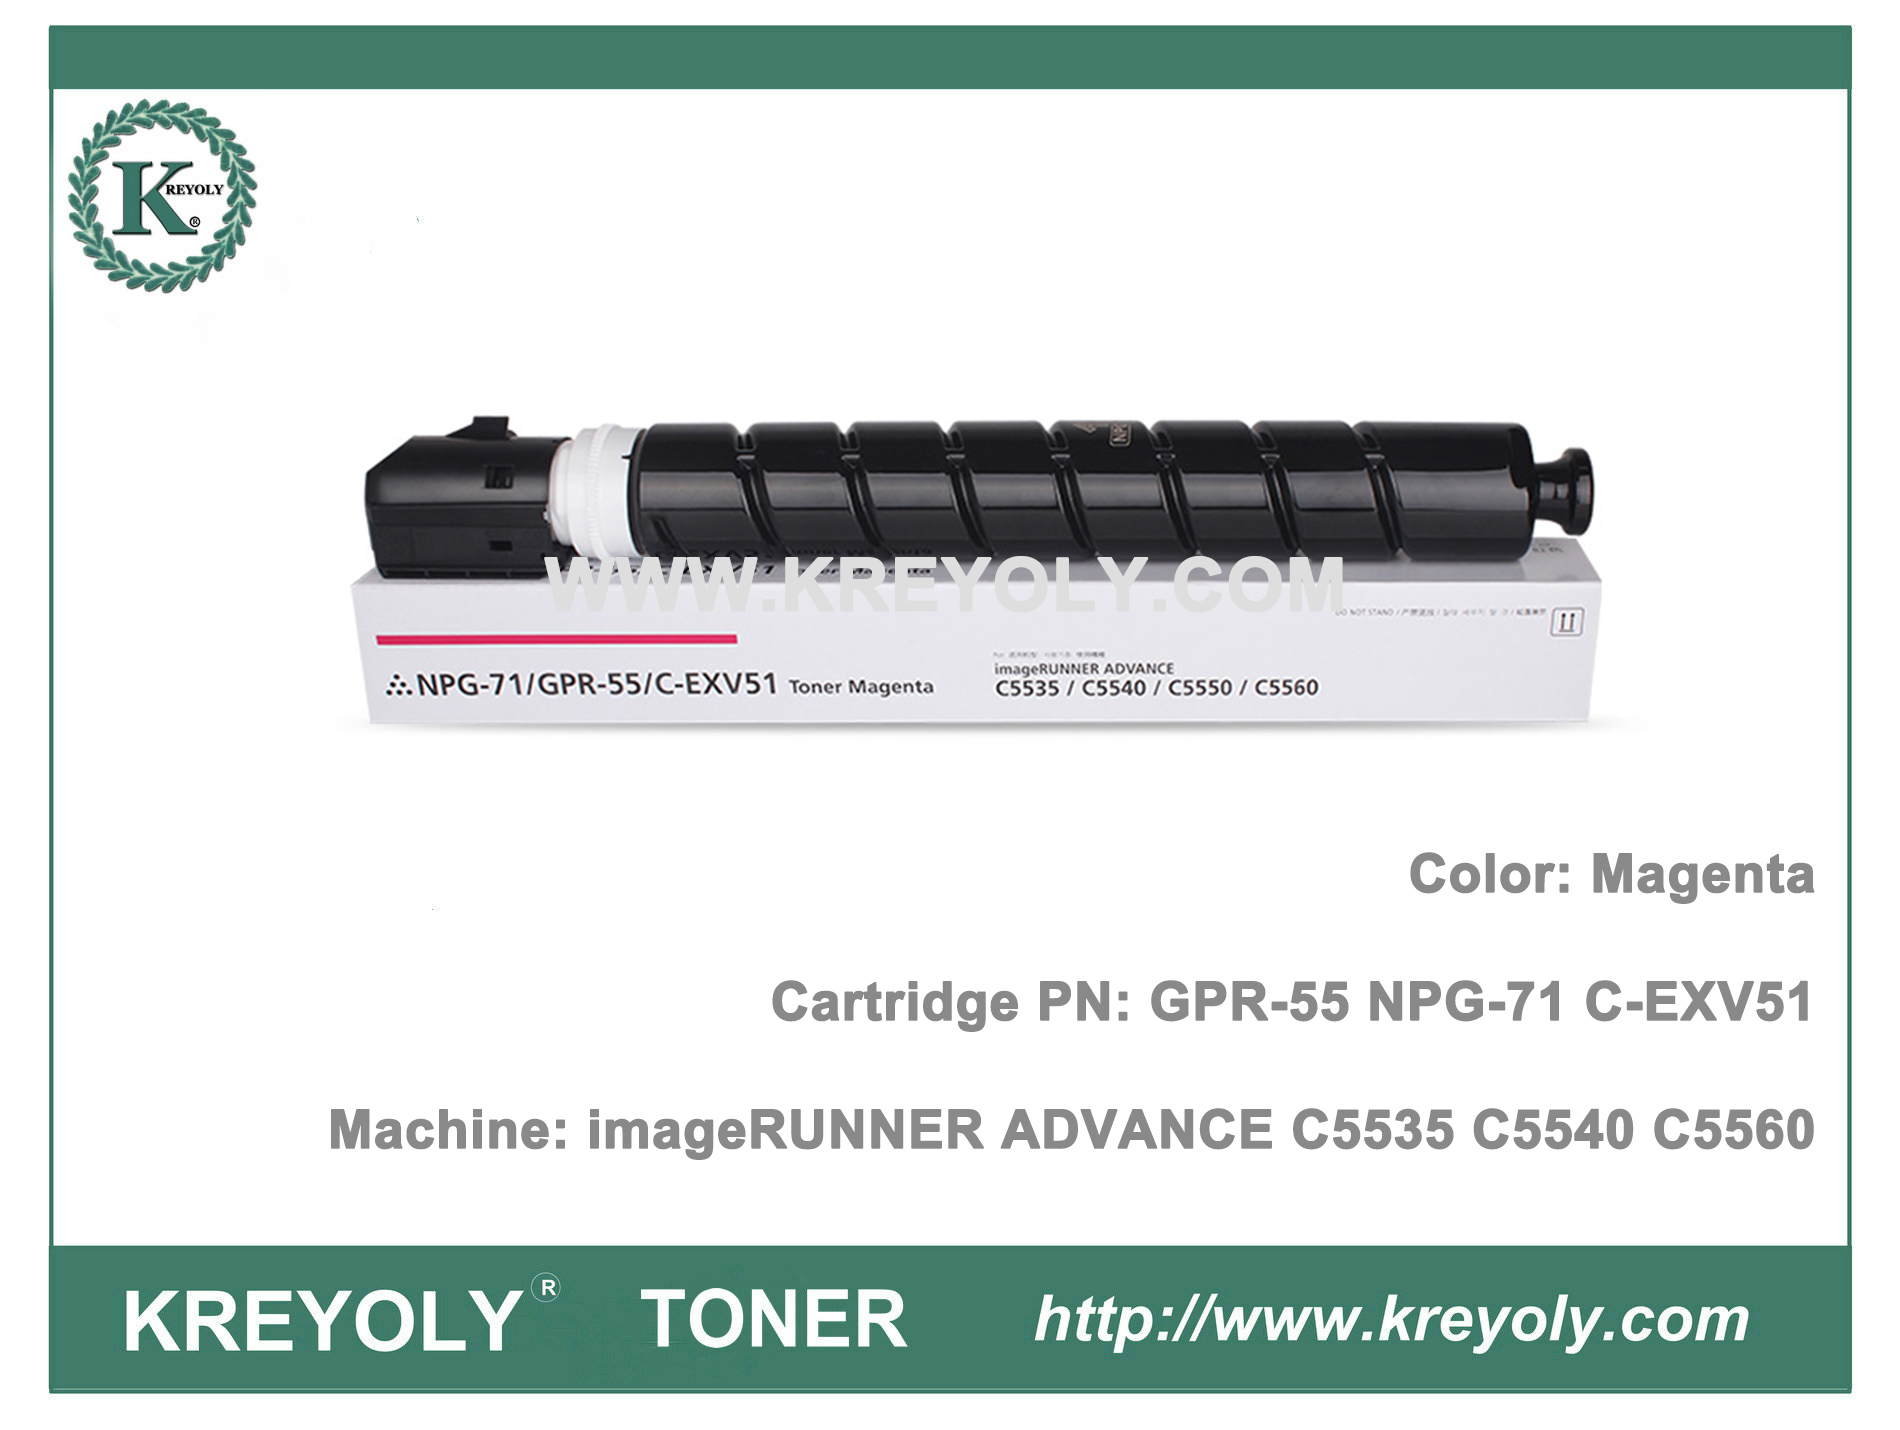 Cartouche de toner NPG71 GPR55 C-EXV51 pour imageRunner ADVANCE C5560 C5550 C5540 C5535